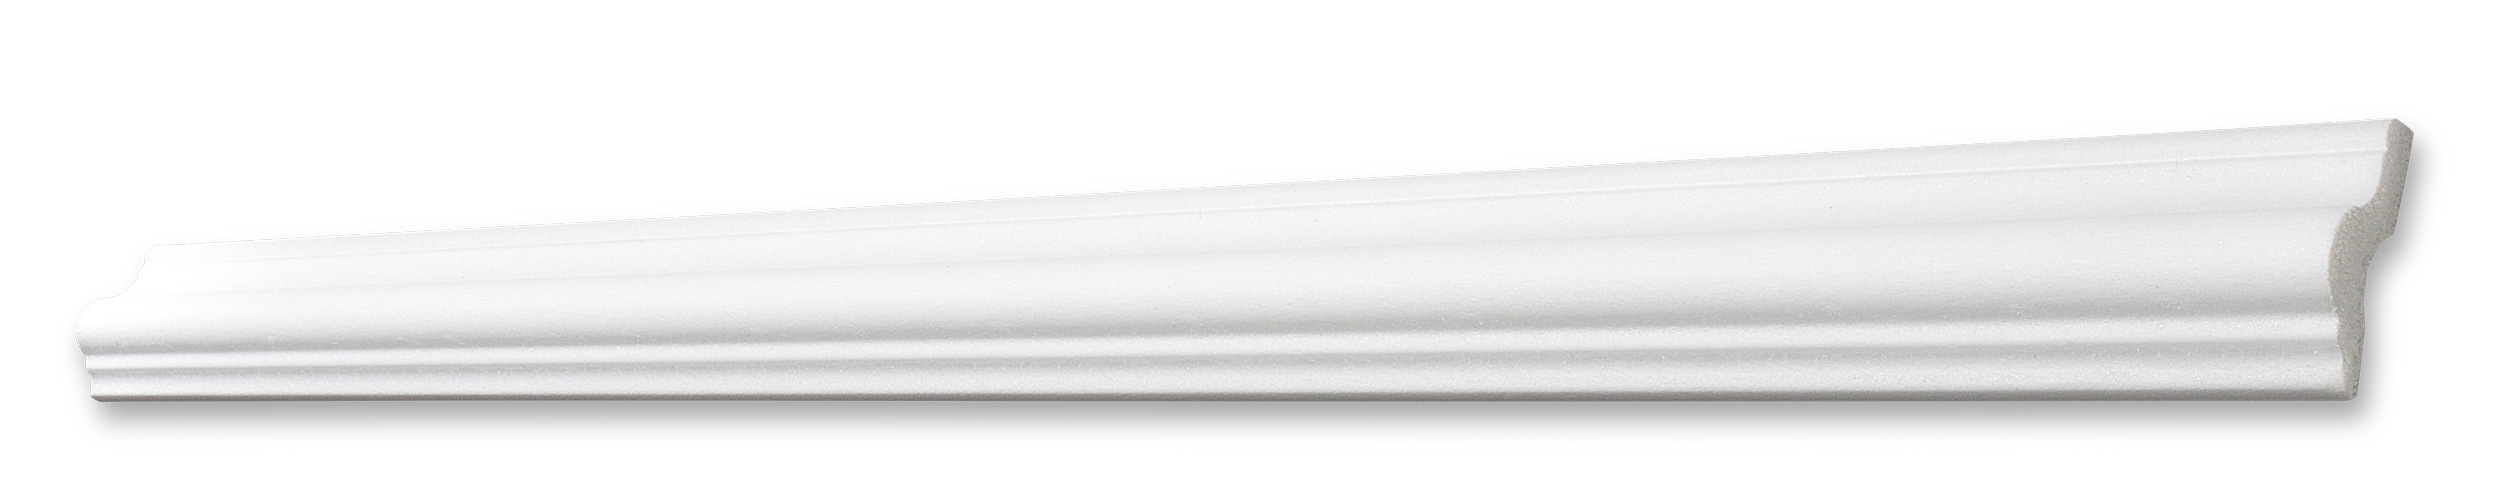 Decosa Flachprofil V40, weiß, 40 mm, Länge: 2 m